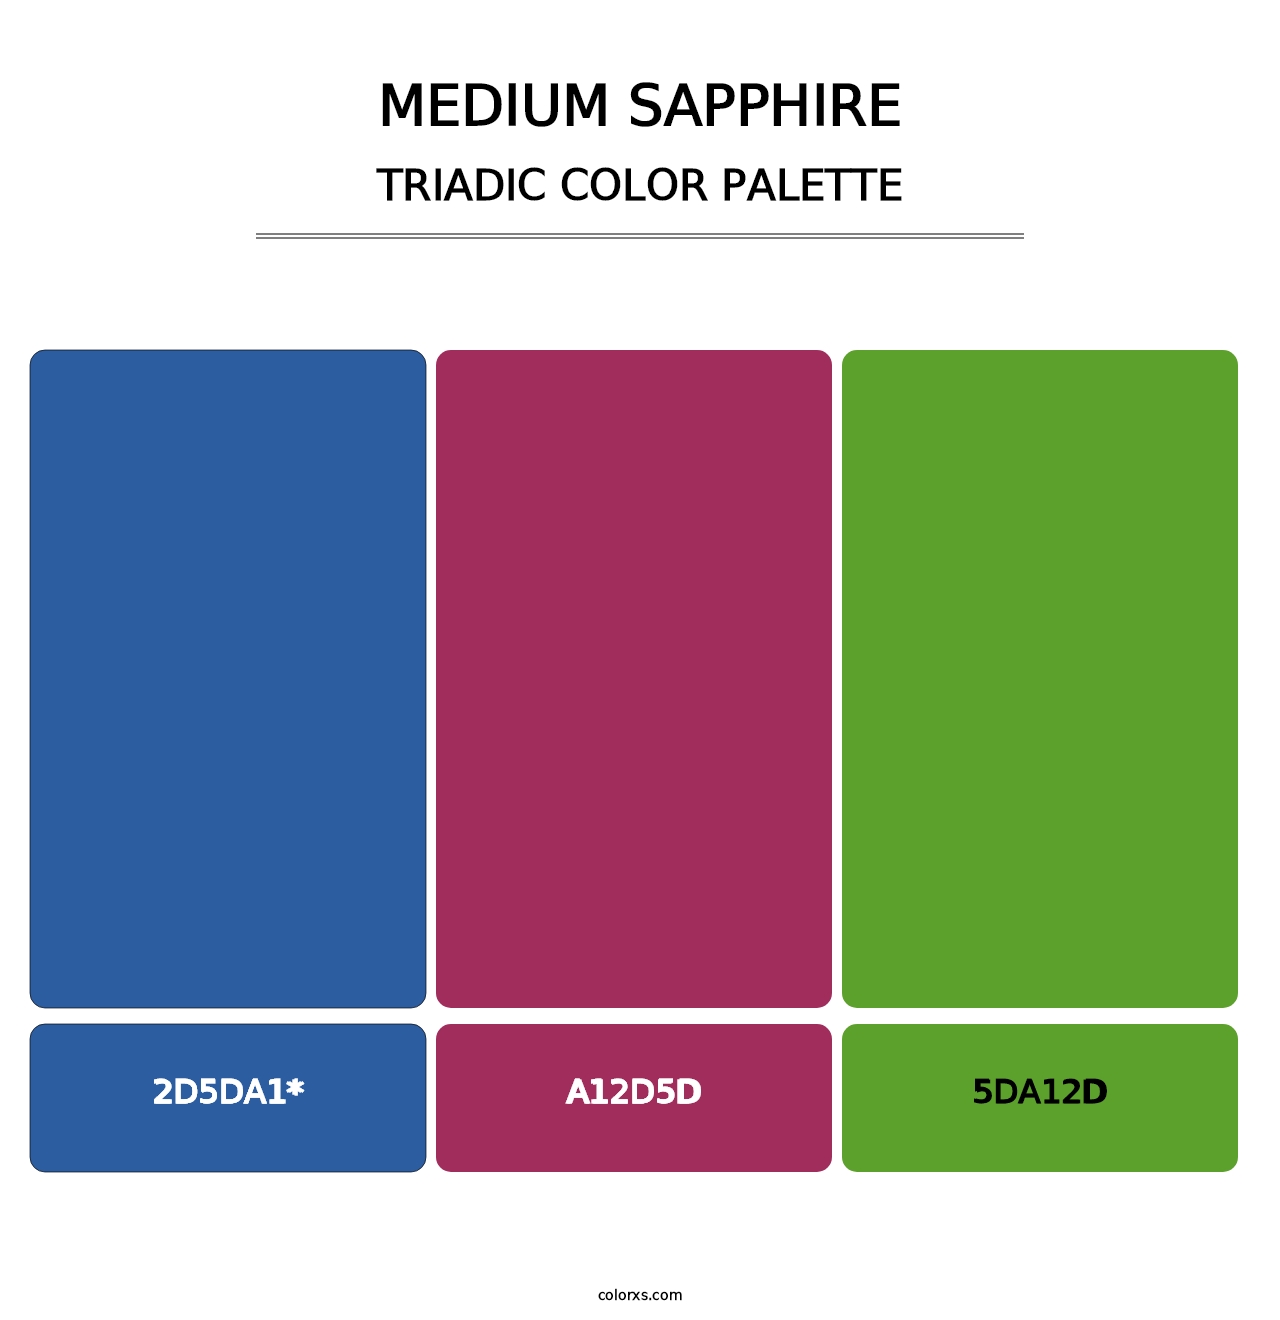 Medium Sapphire - Triadic Color Palette